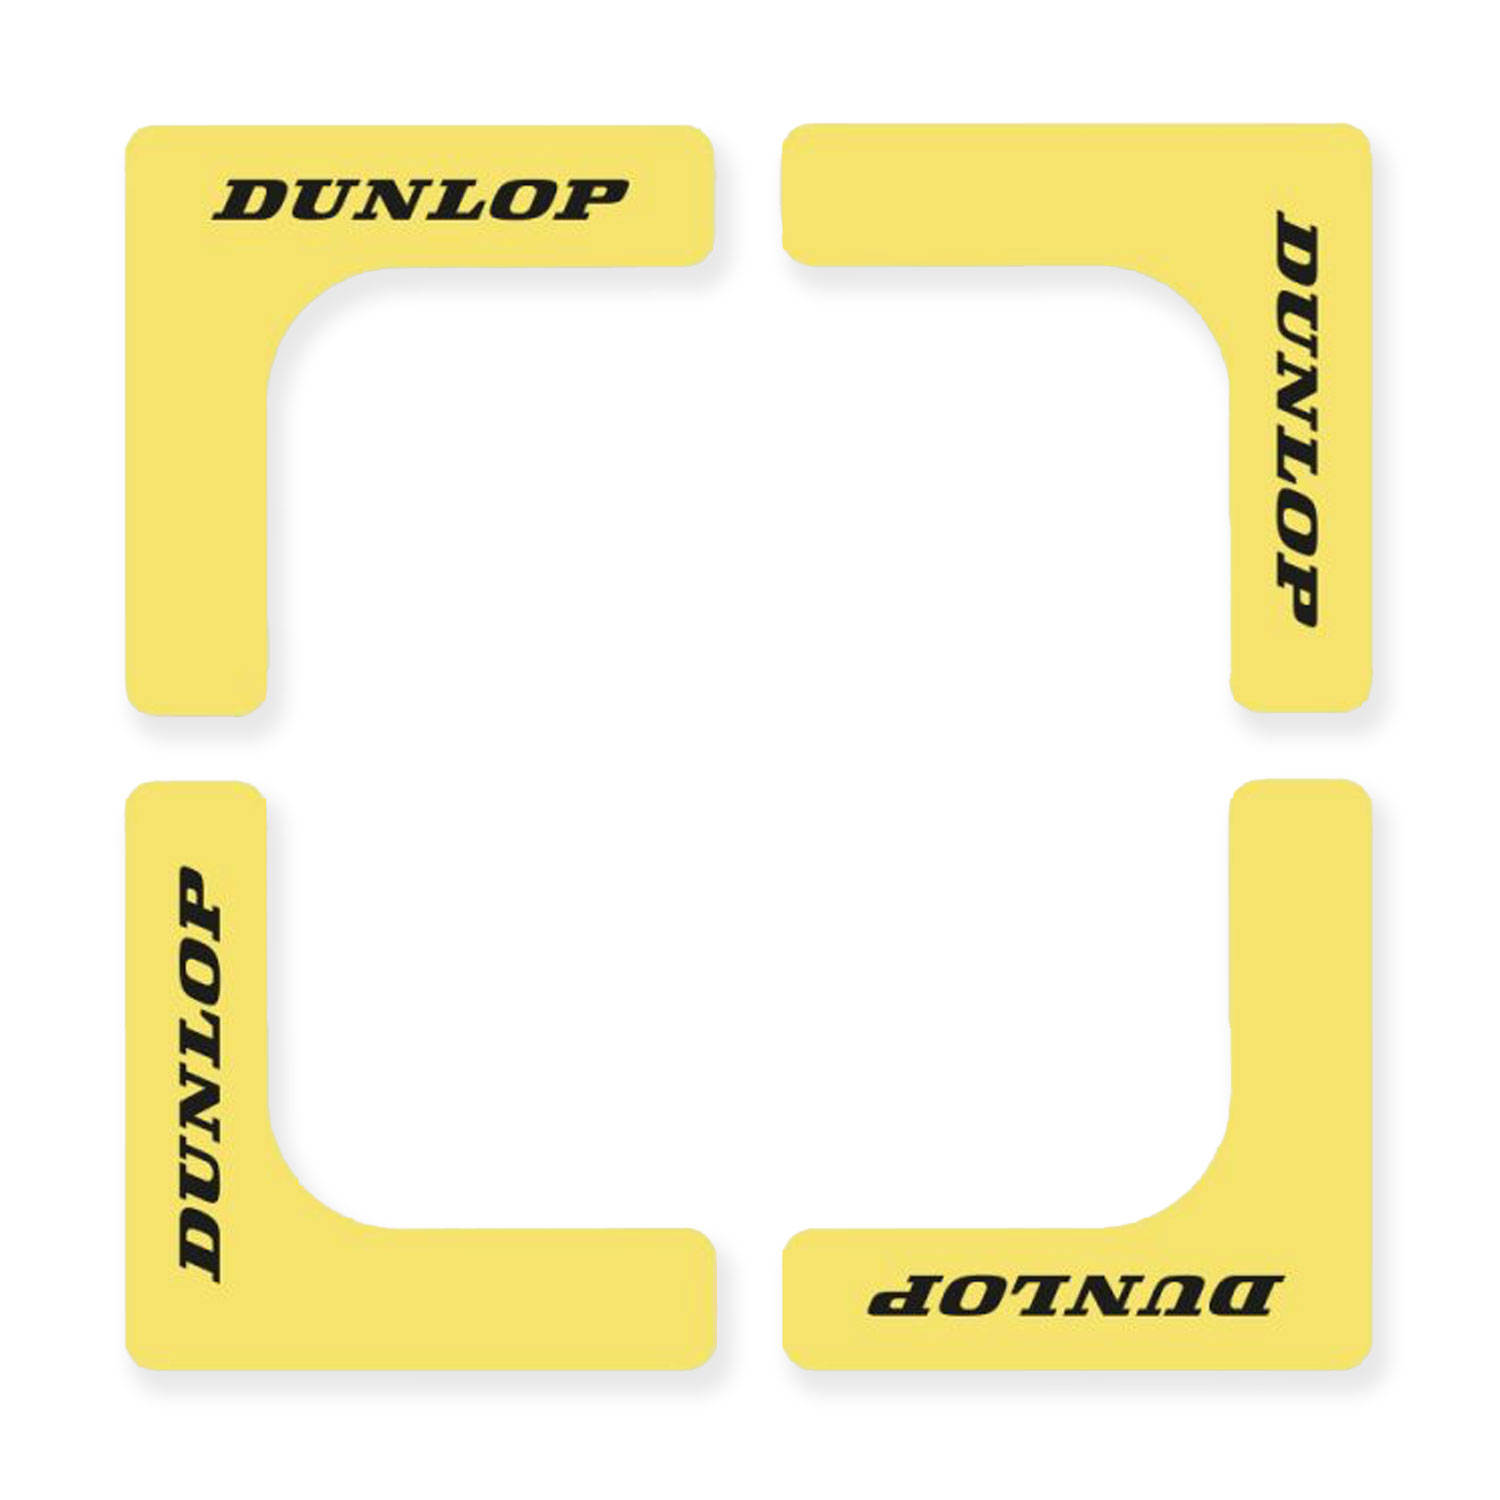 Dunlop Court Edges - Yellow